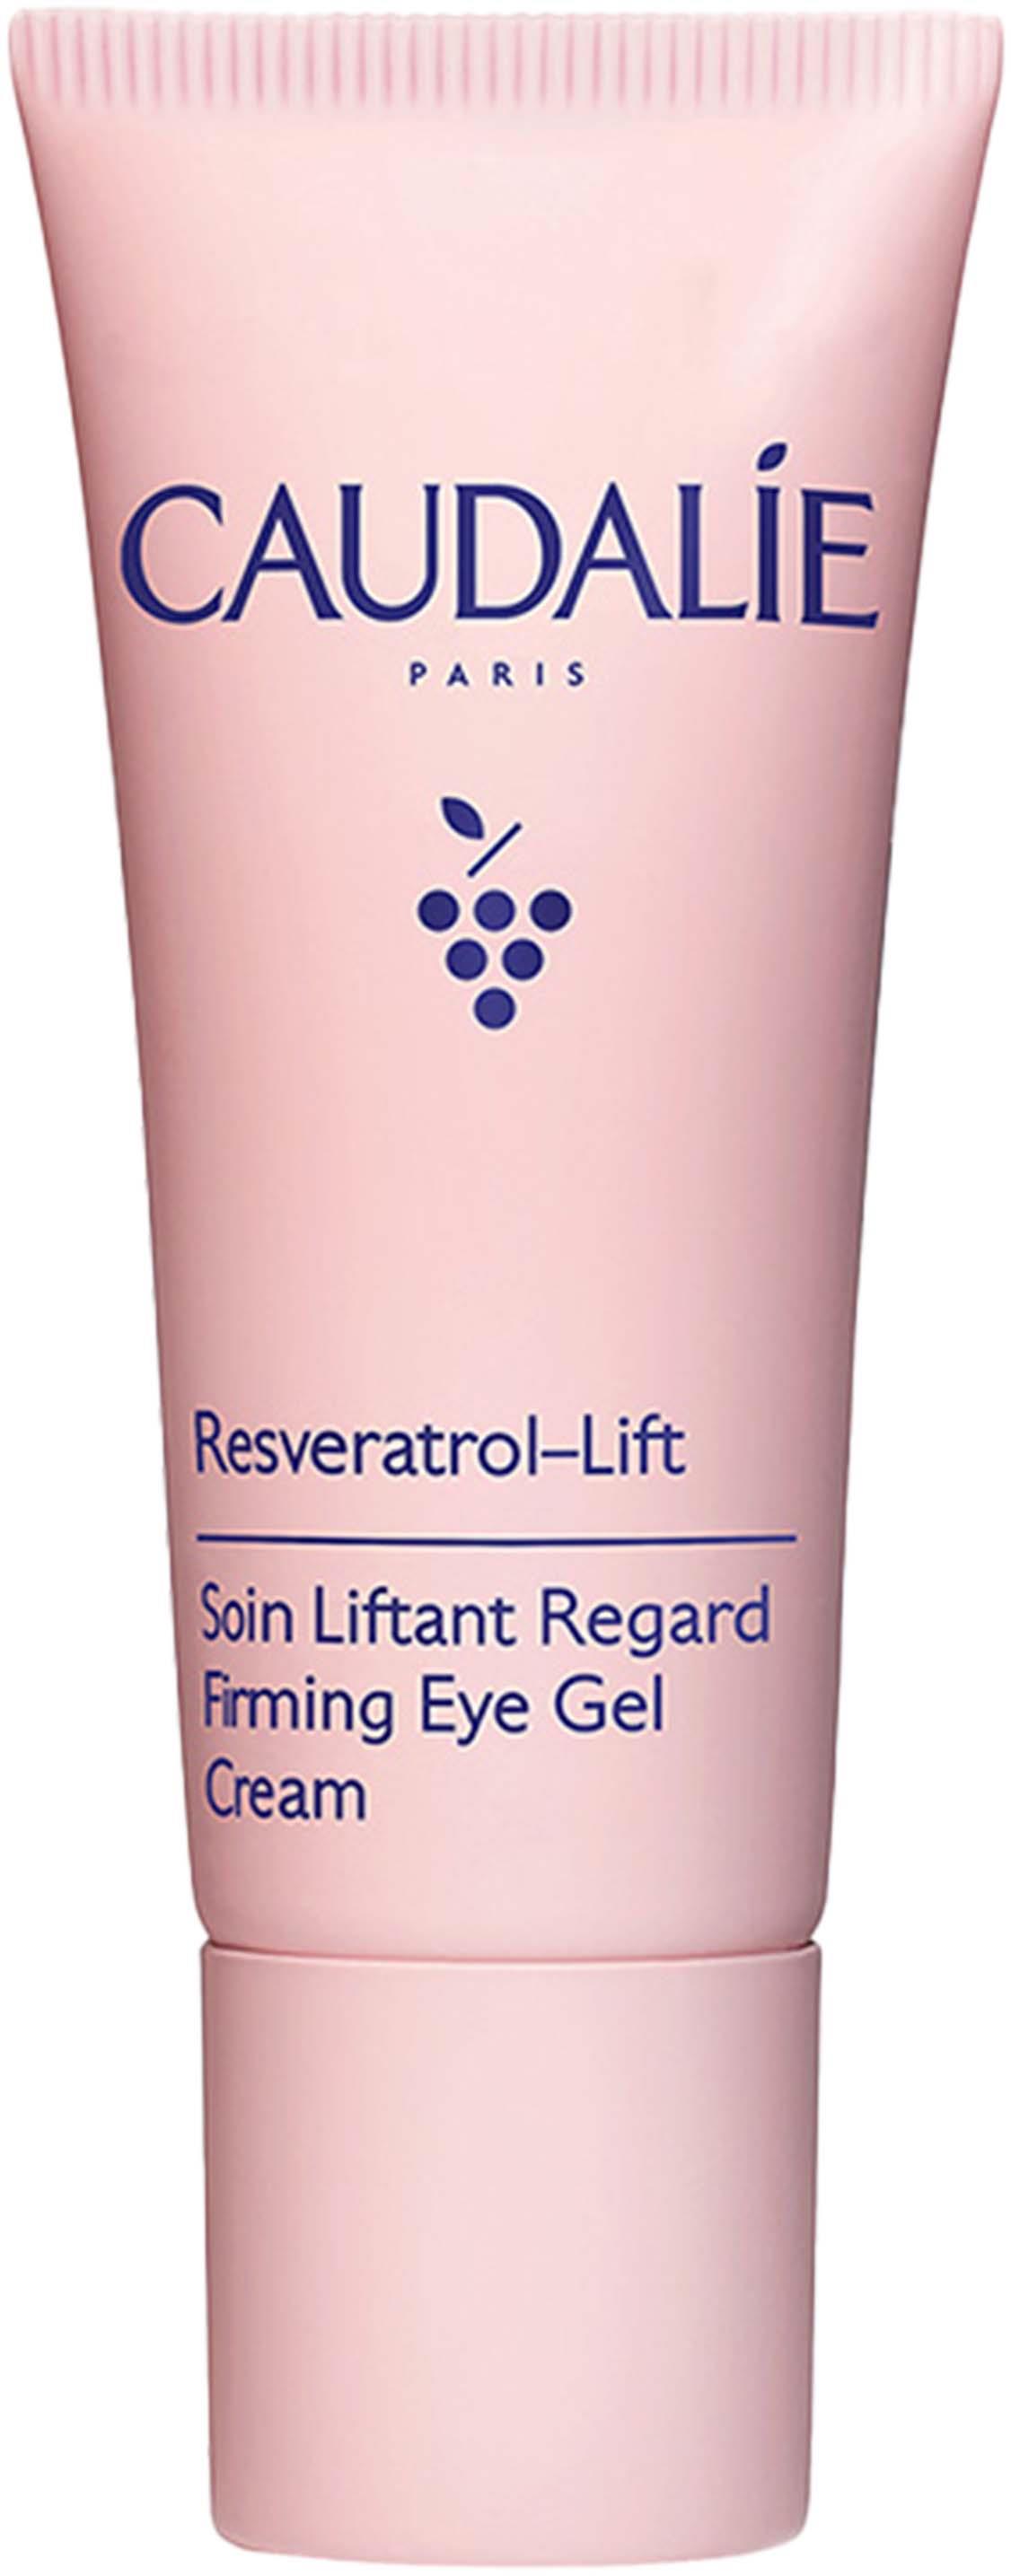 Caudalie Resveratrol-Lift Firming Eye Gel Cream 15 ml